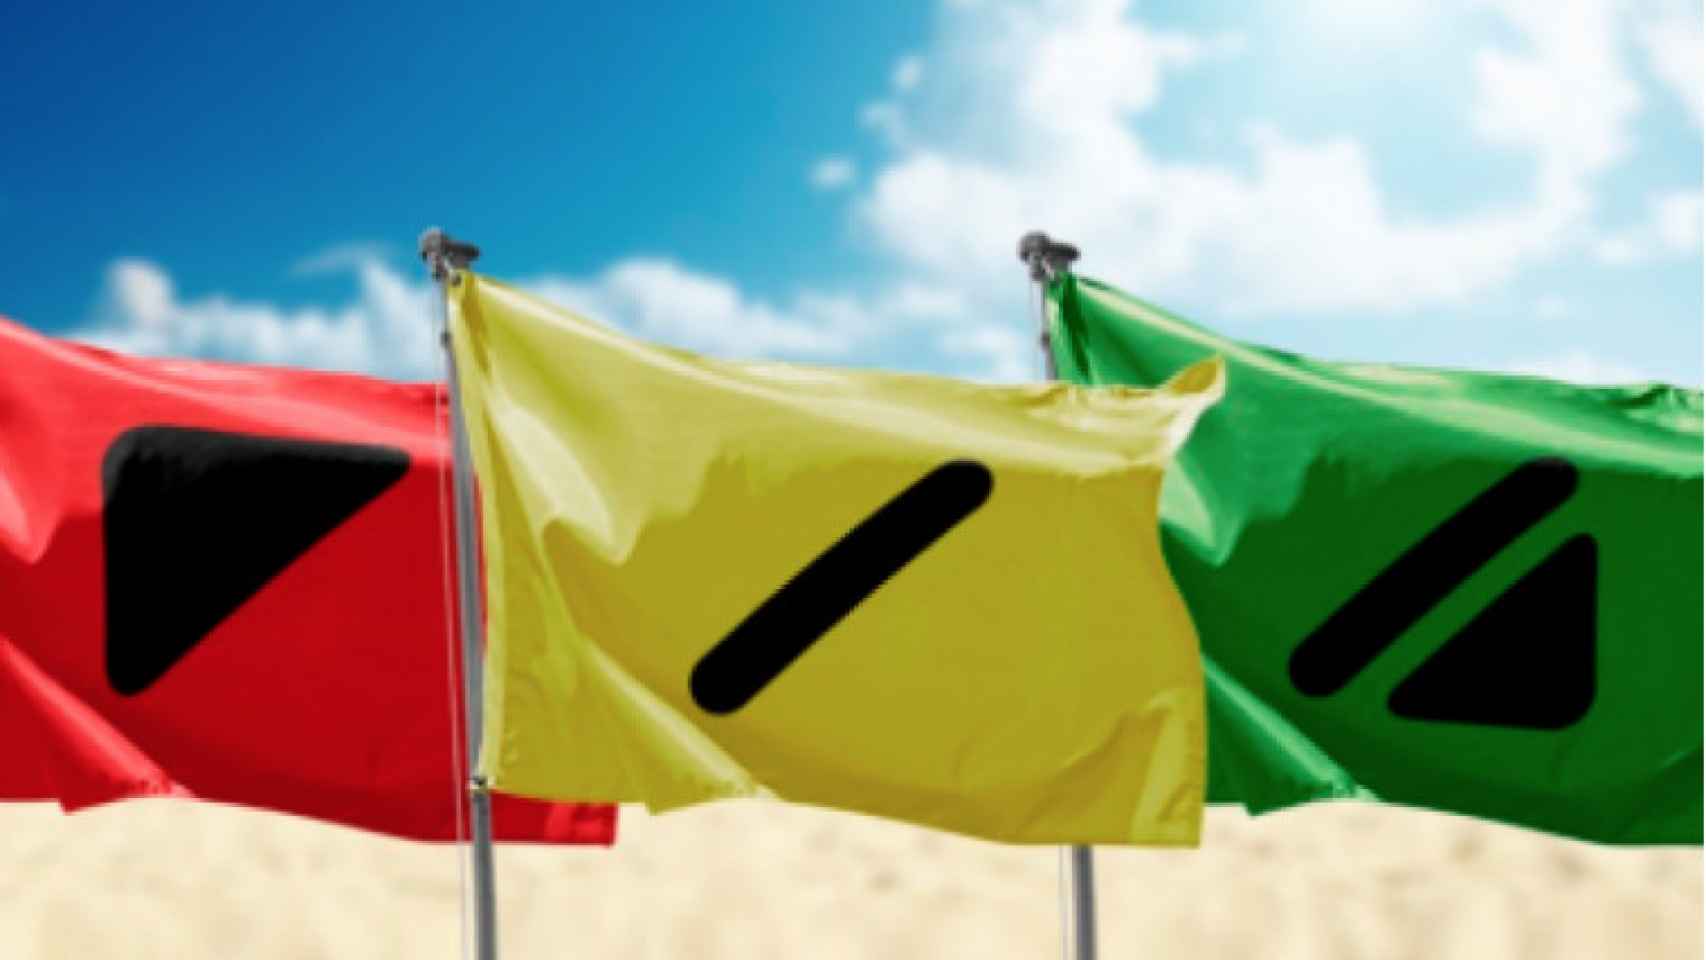 Banderas con señalización adaptada para personas daltónicas